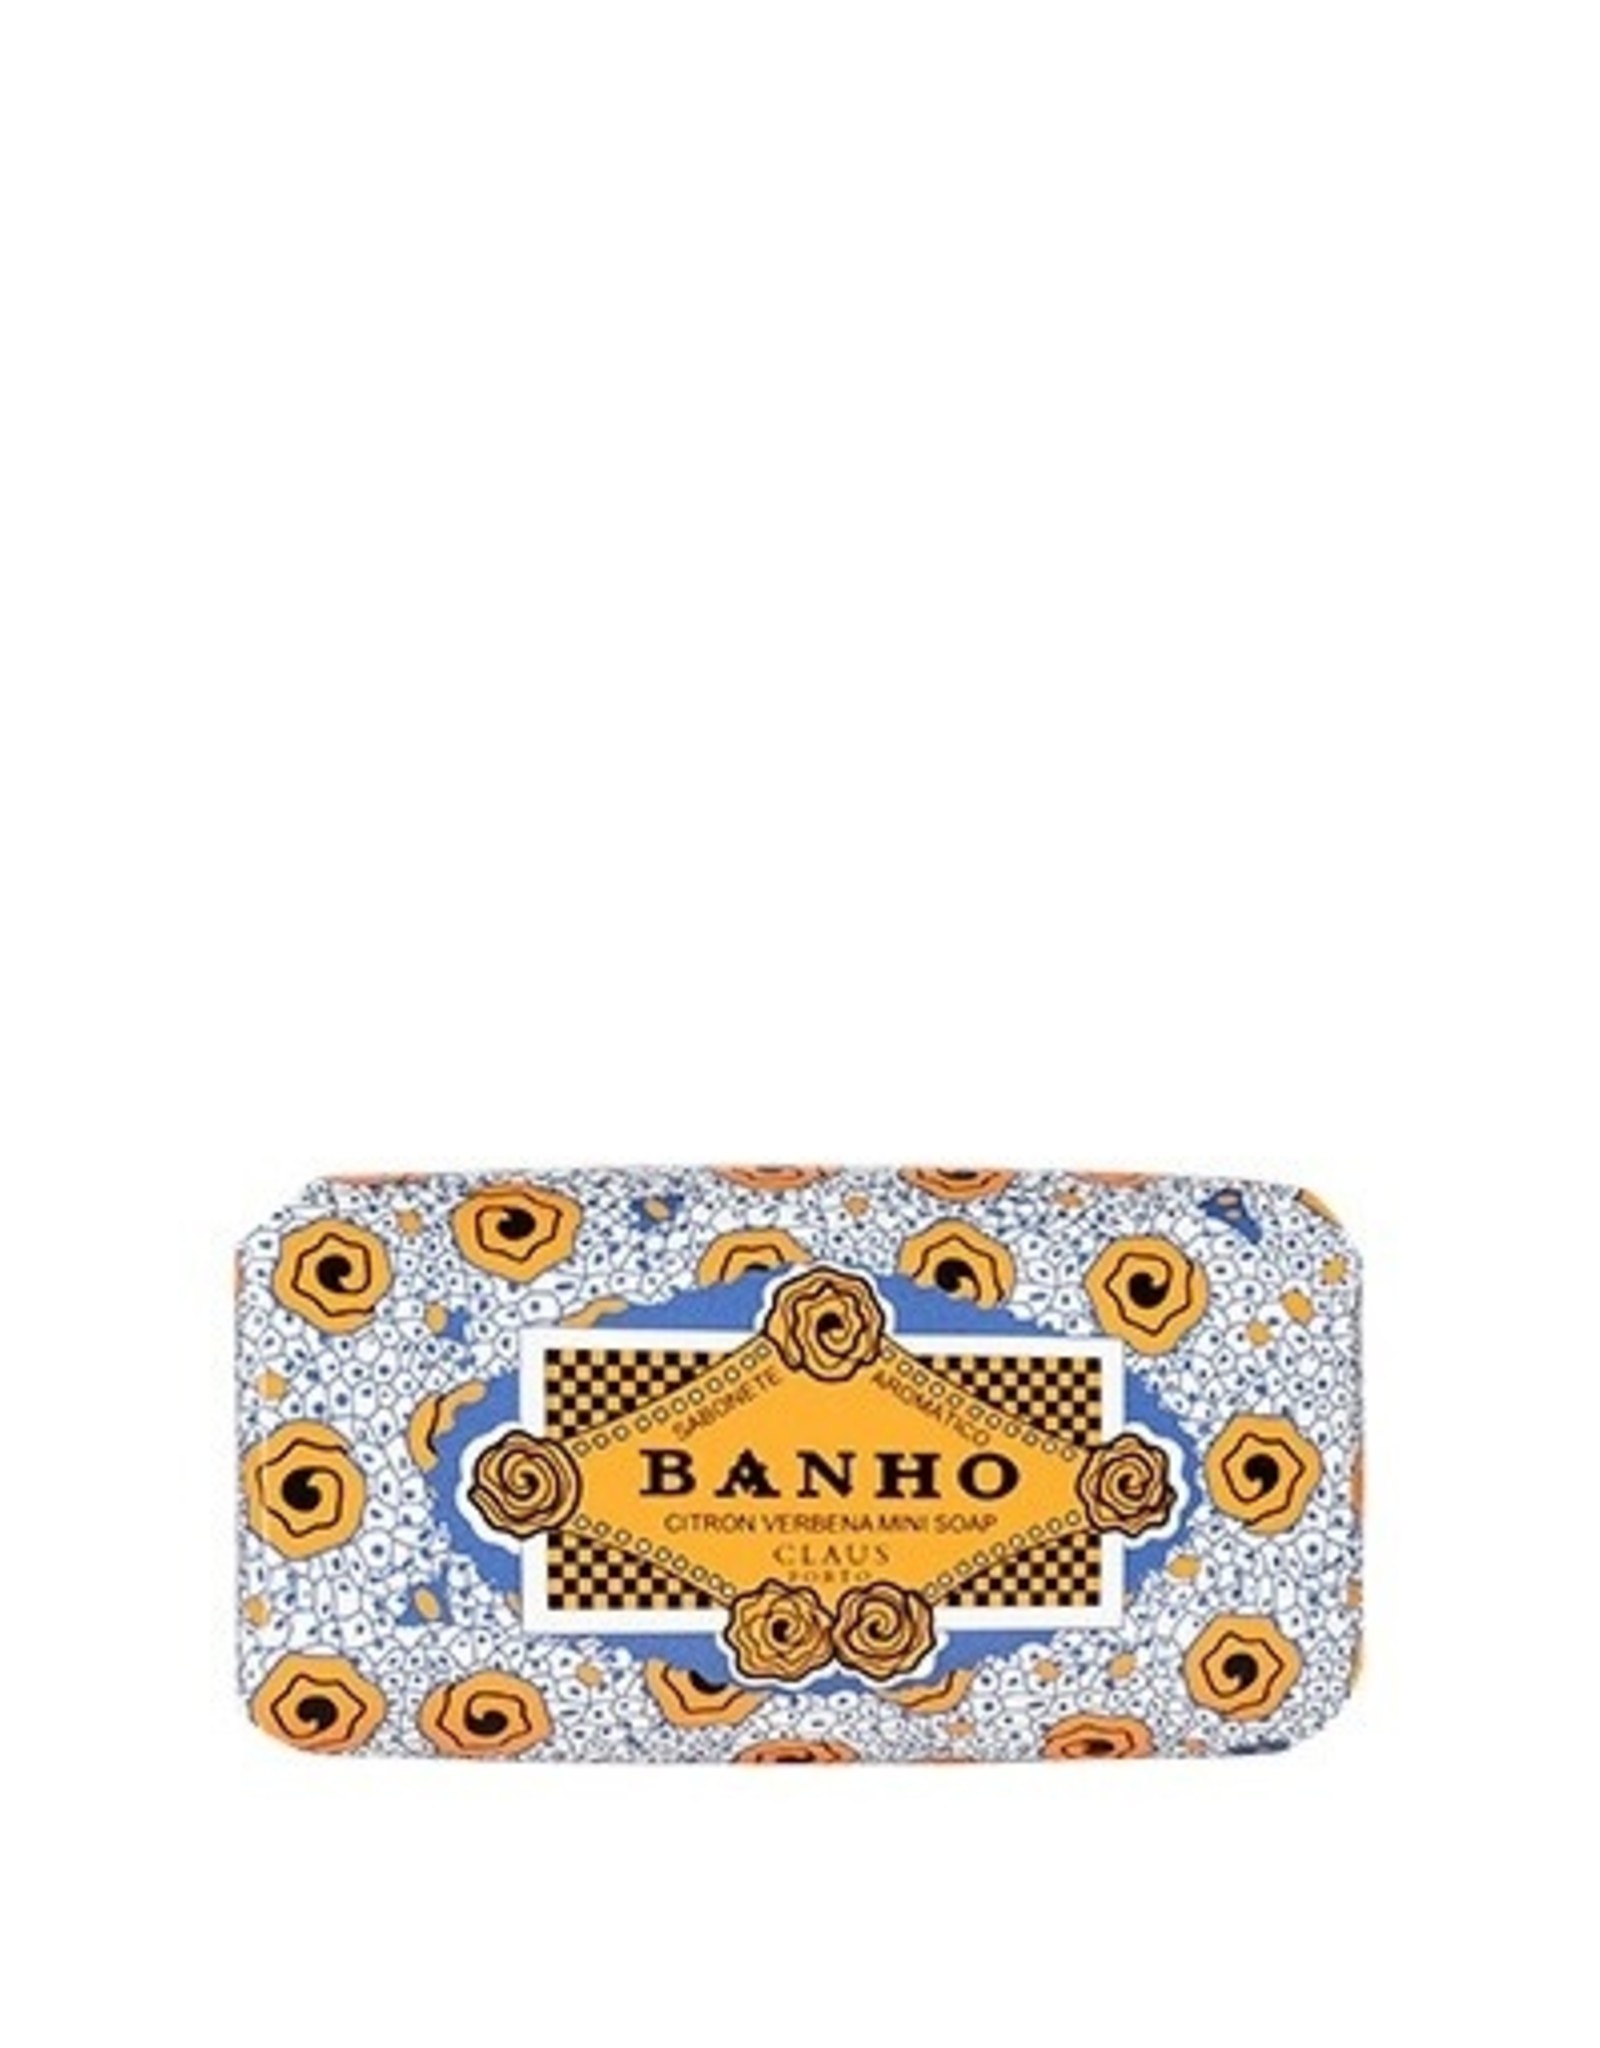 ClPo Banho Mini Bar Soap